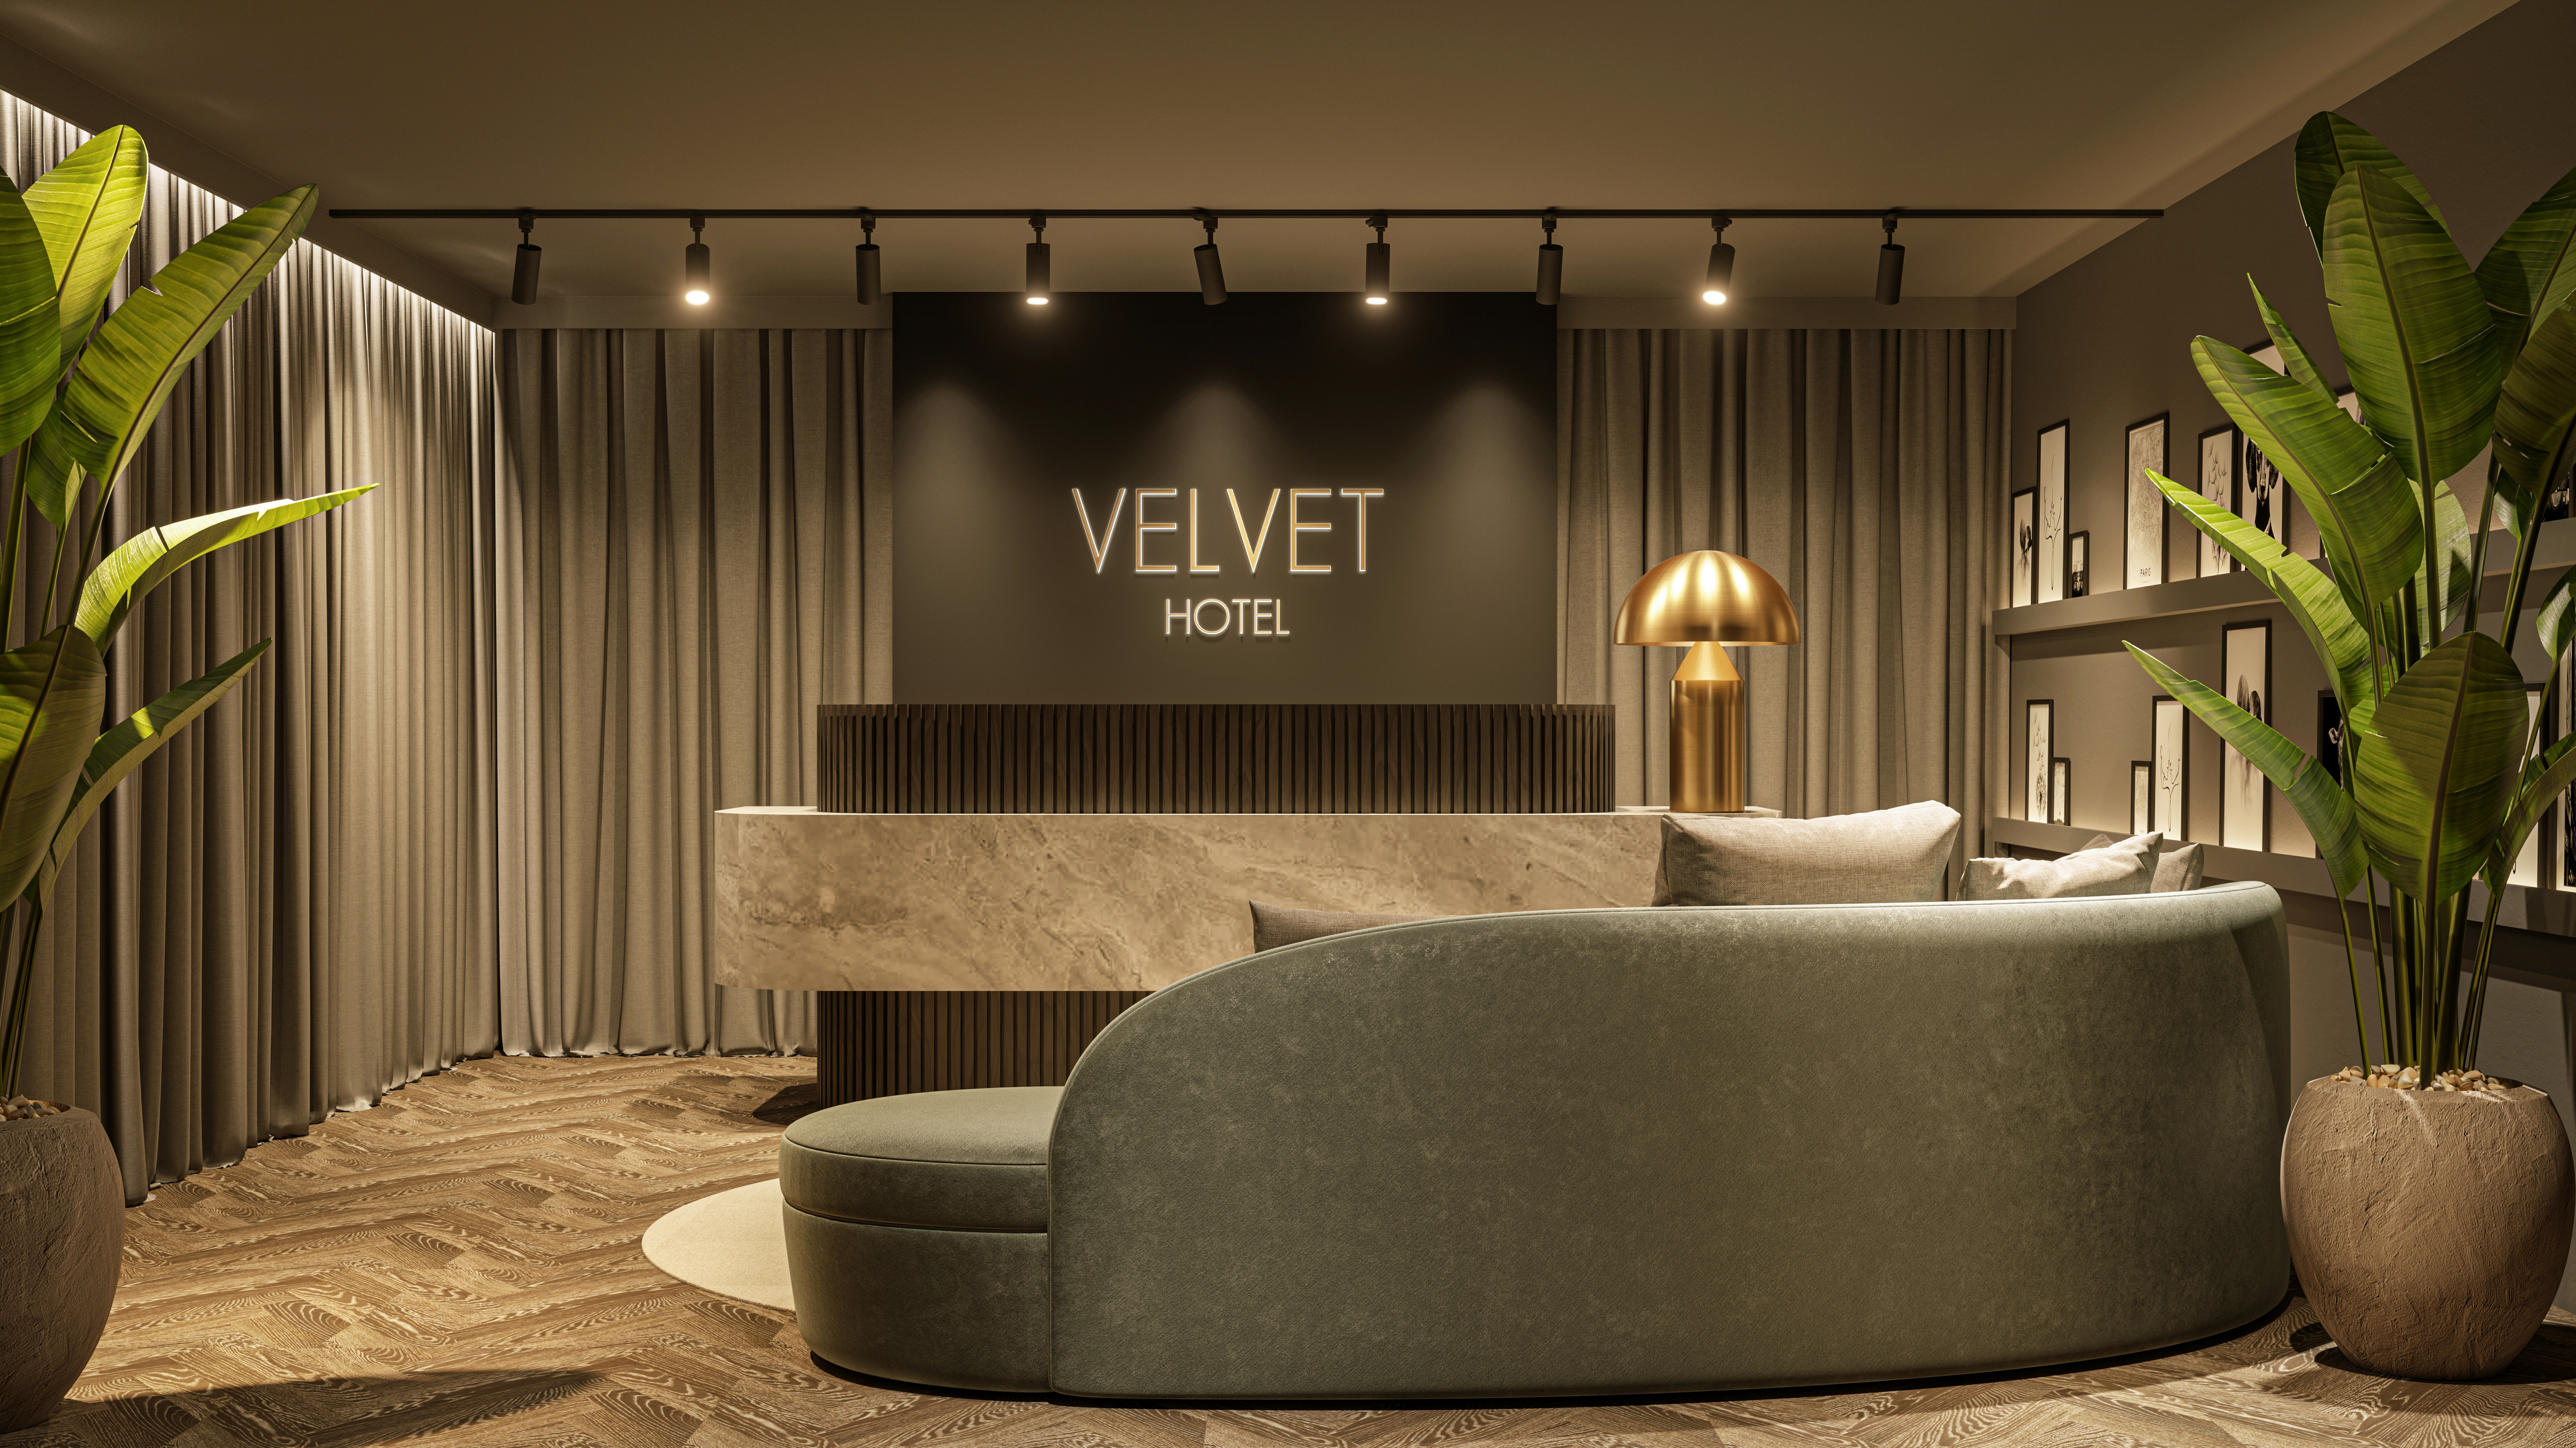 Velvet hotel reception